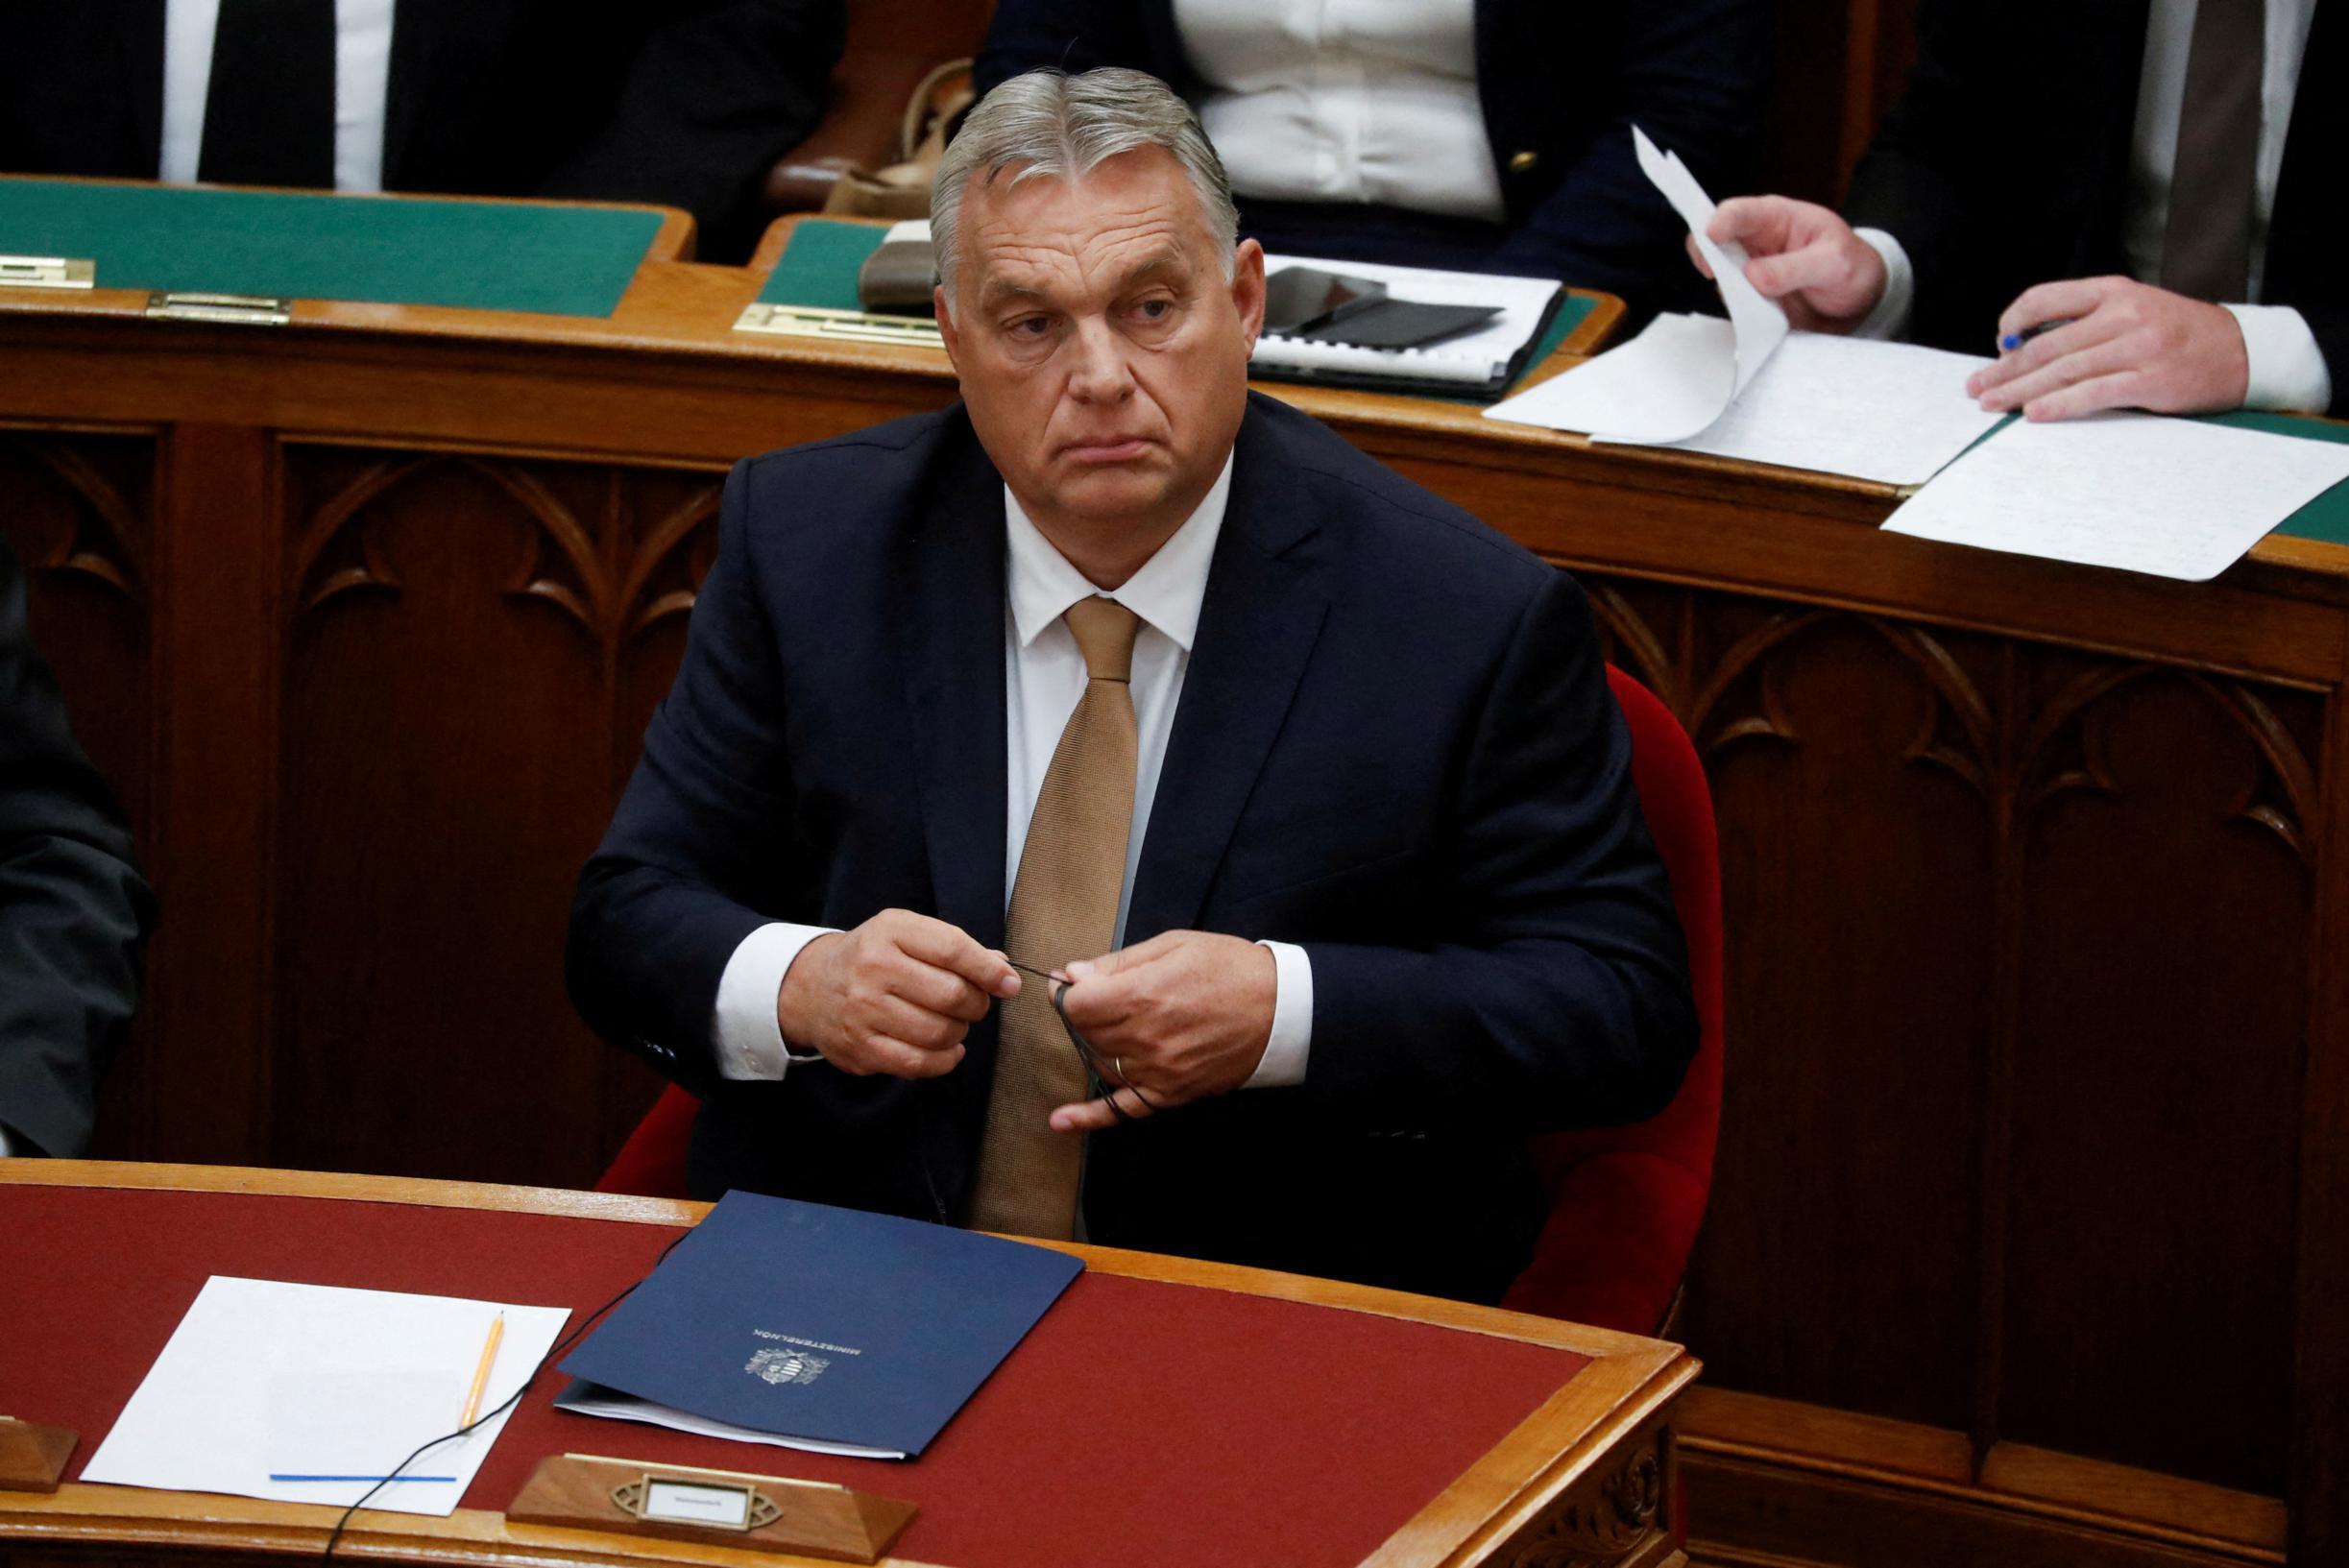 L’Ucraina accusa il primo ministro ungherese Orban di “mancanza di rispetto e miopia” dopo osservazioni controverse